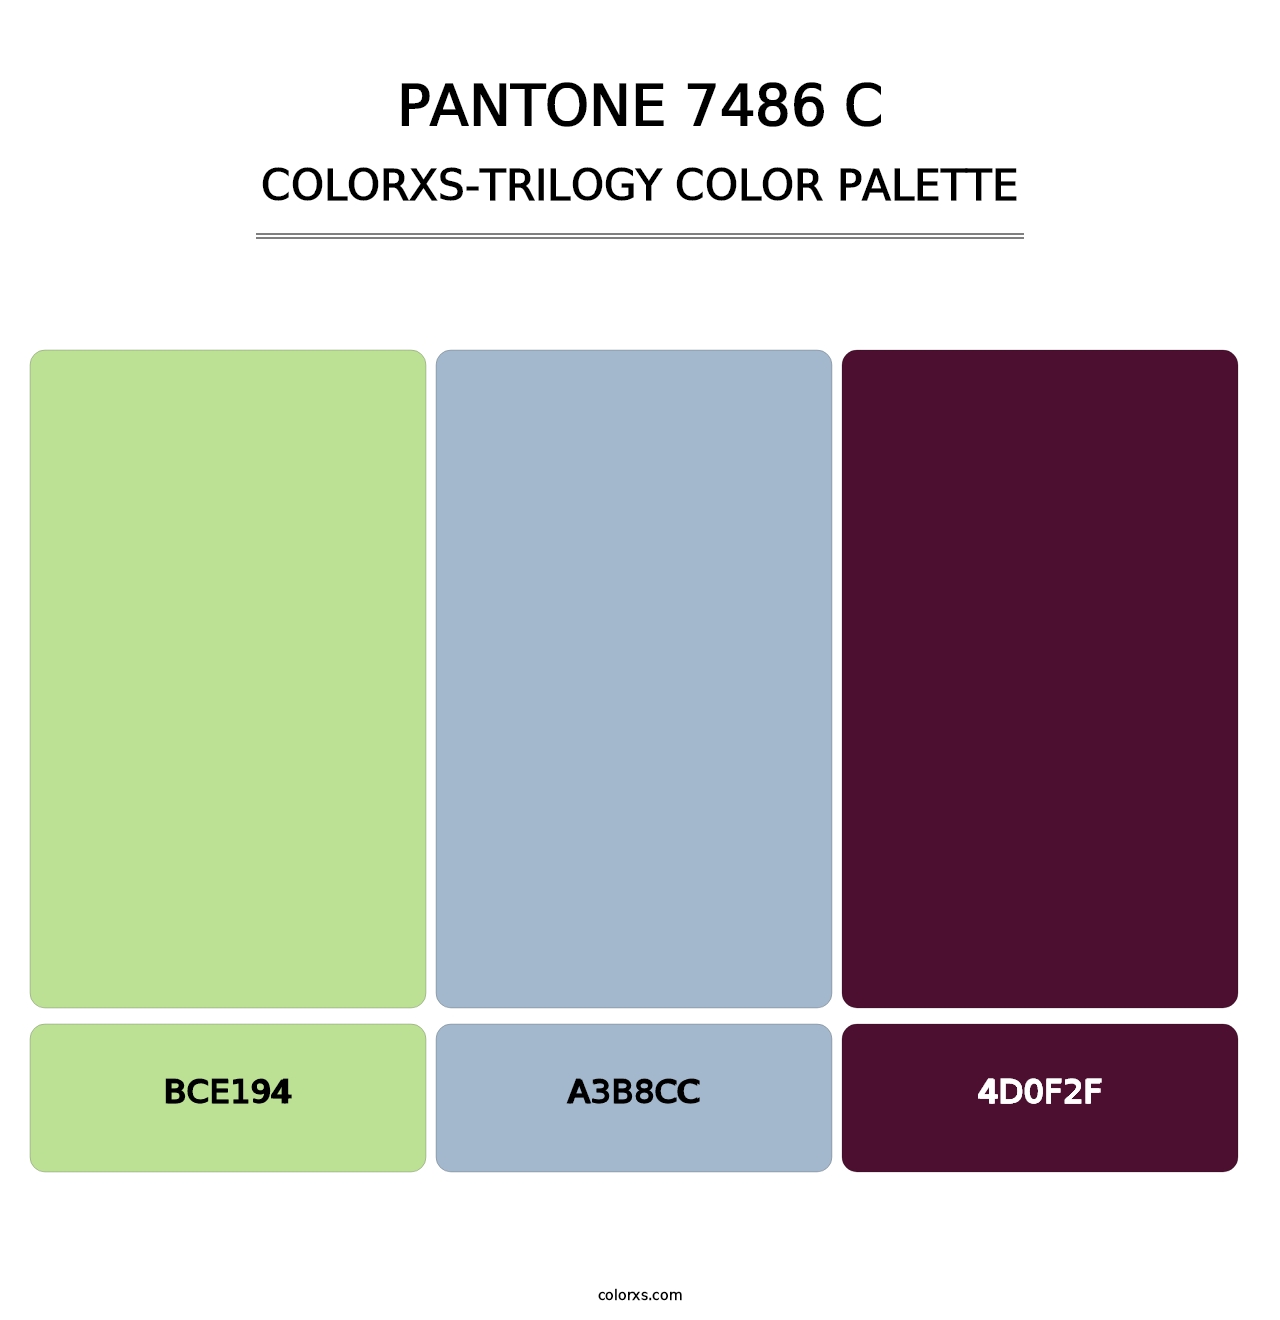 PANTONE 7486 C - Colorxs Trilogy Palette